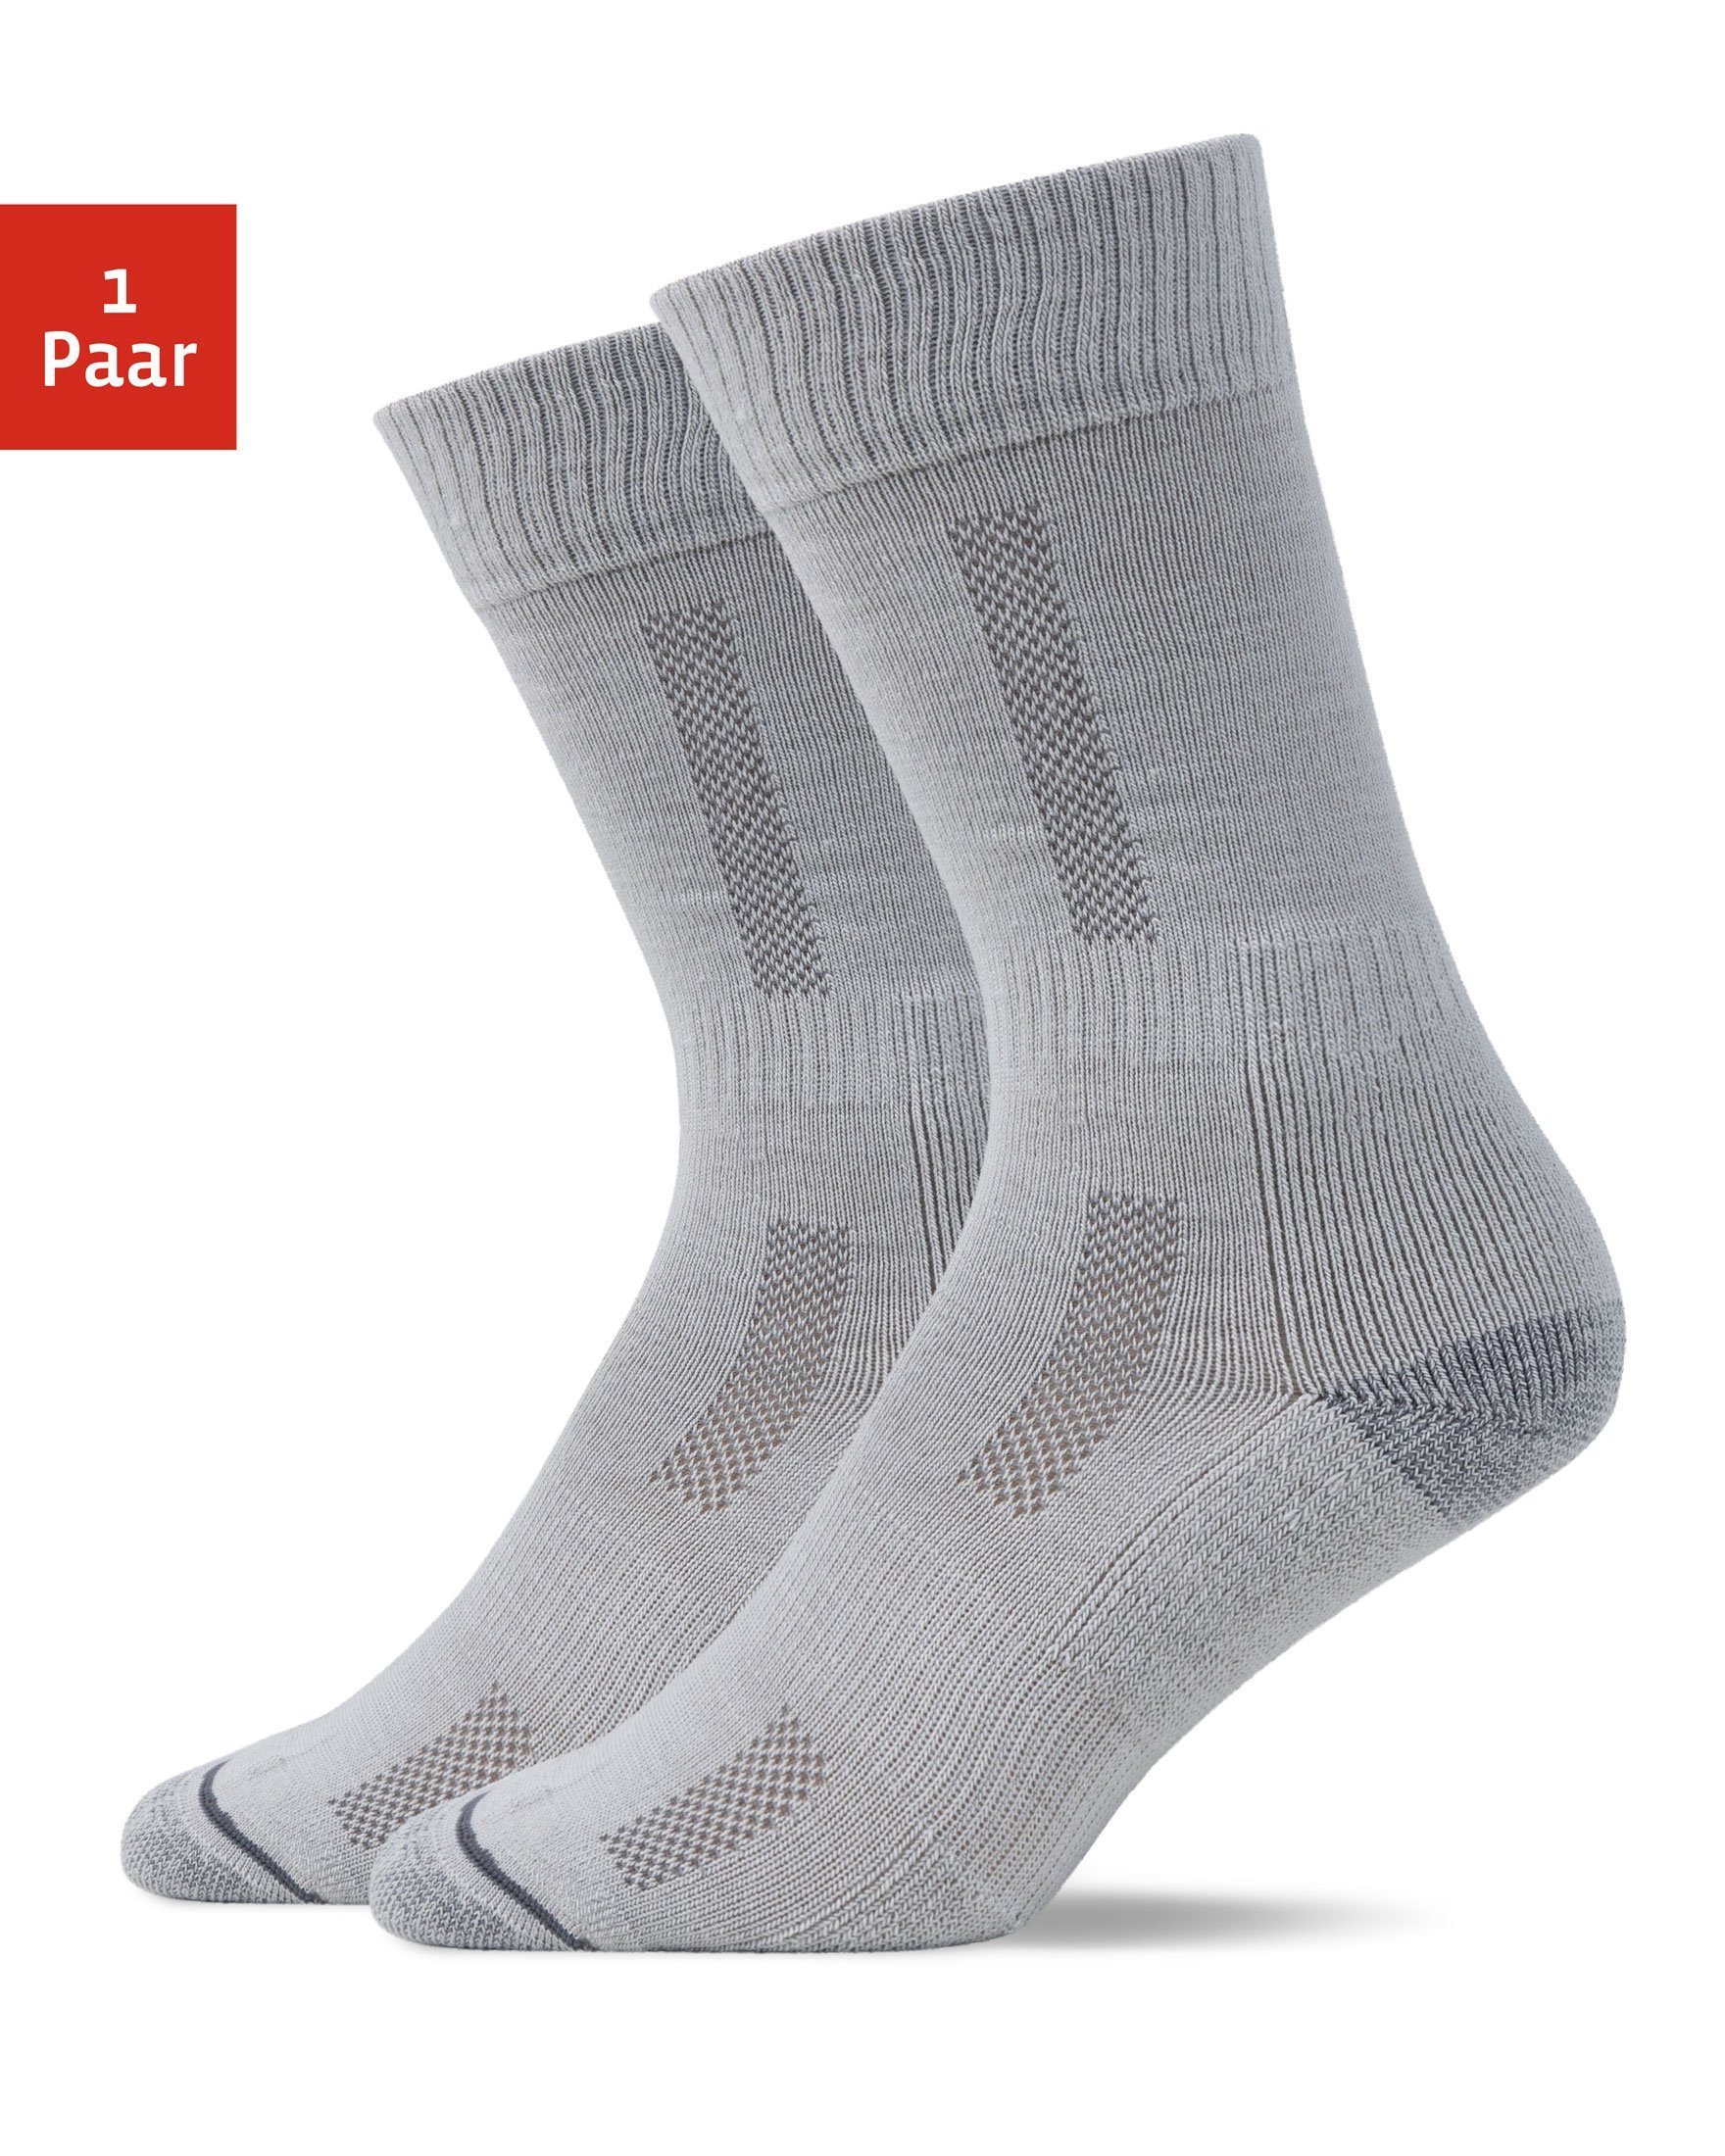 SNOCKS Похідні шкарпетки Hiking Socks für Damen & Herren (1-Paar) mit Merinowolle, garantiert keine Schweißfüße